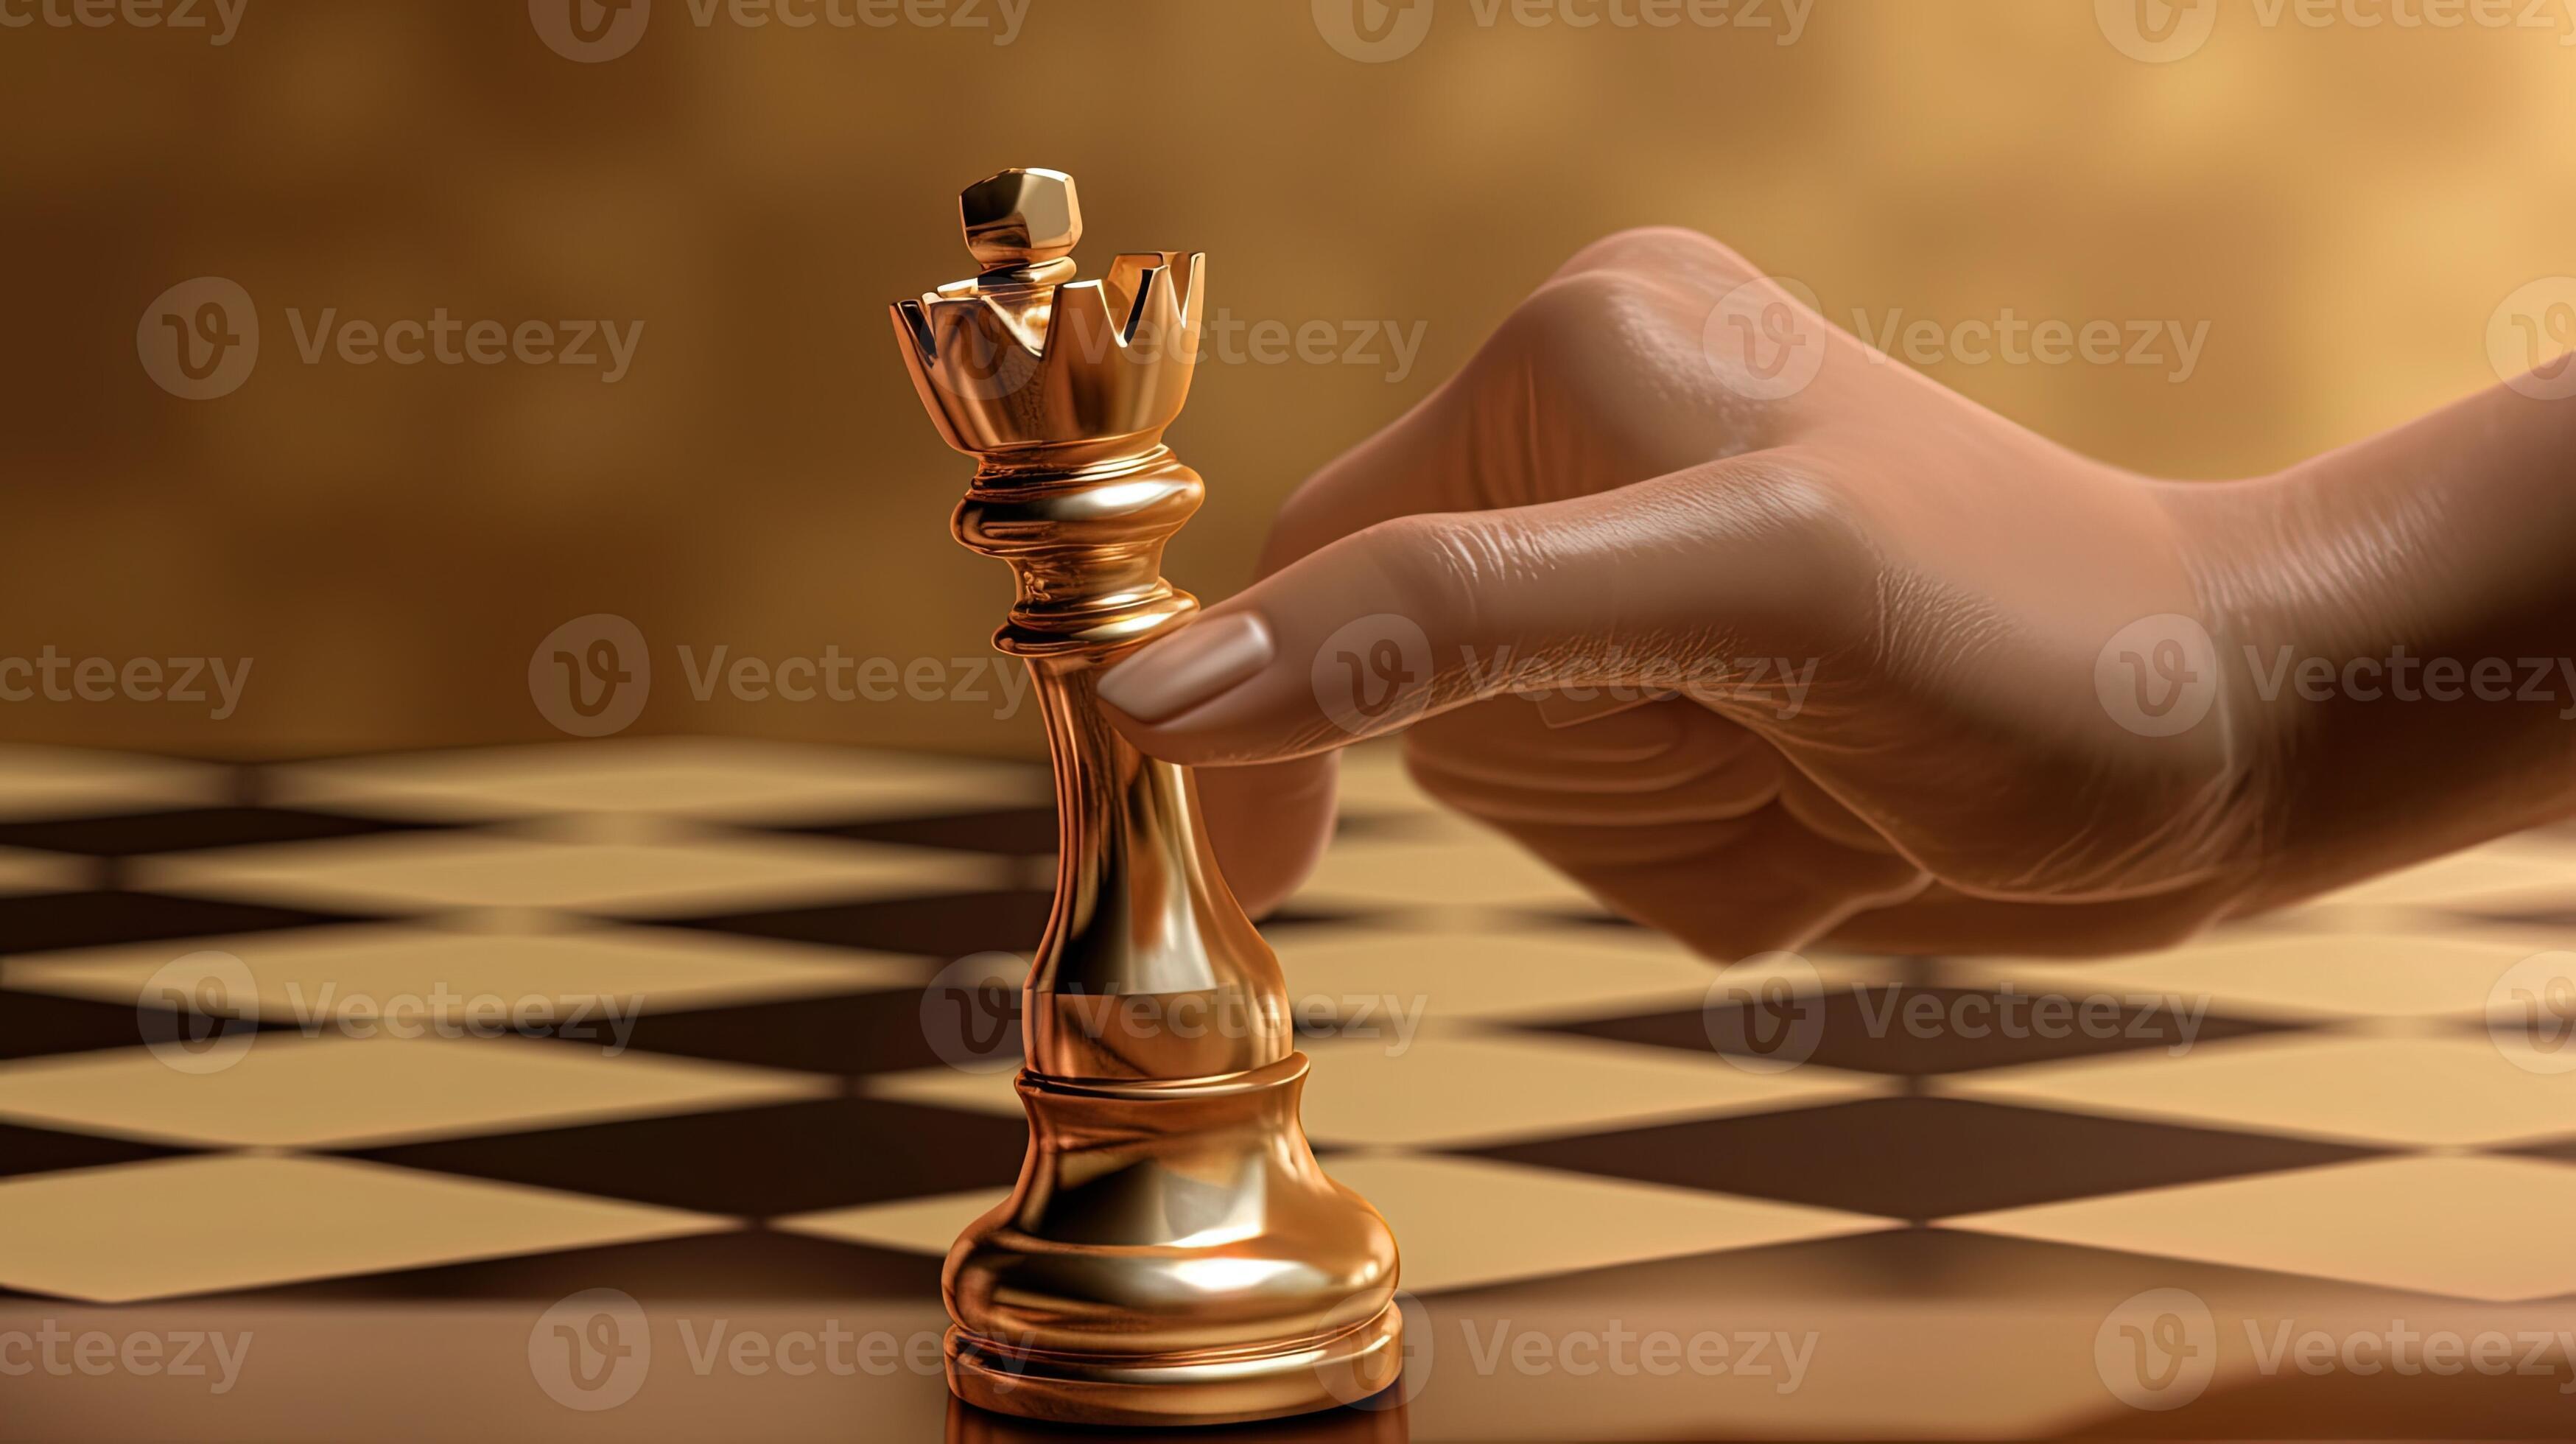 Um tabuleiro de xadrez com a peça de xadrez da rainha ai